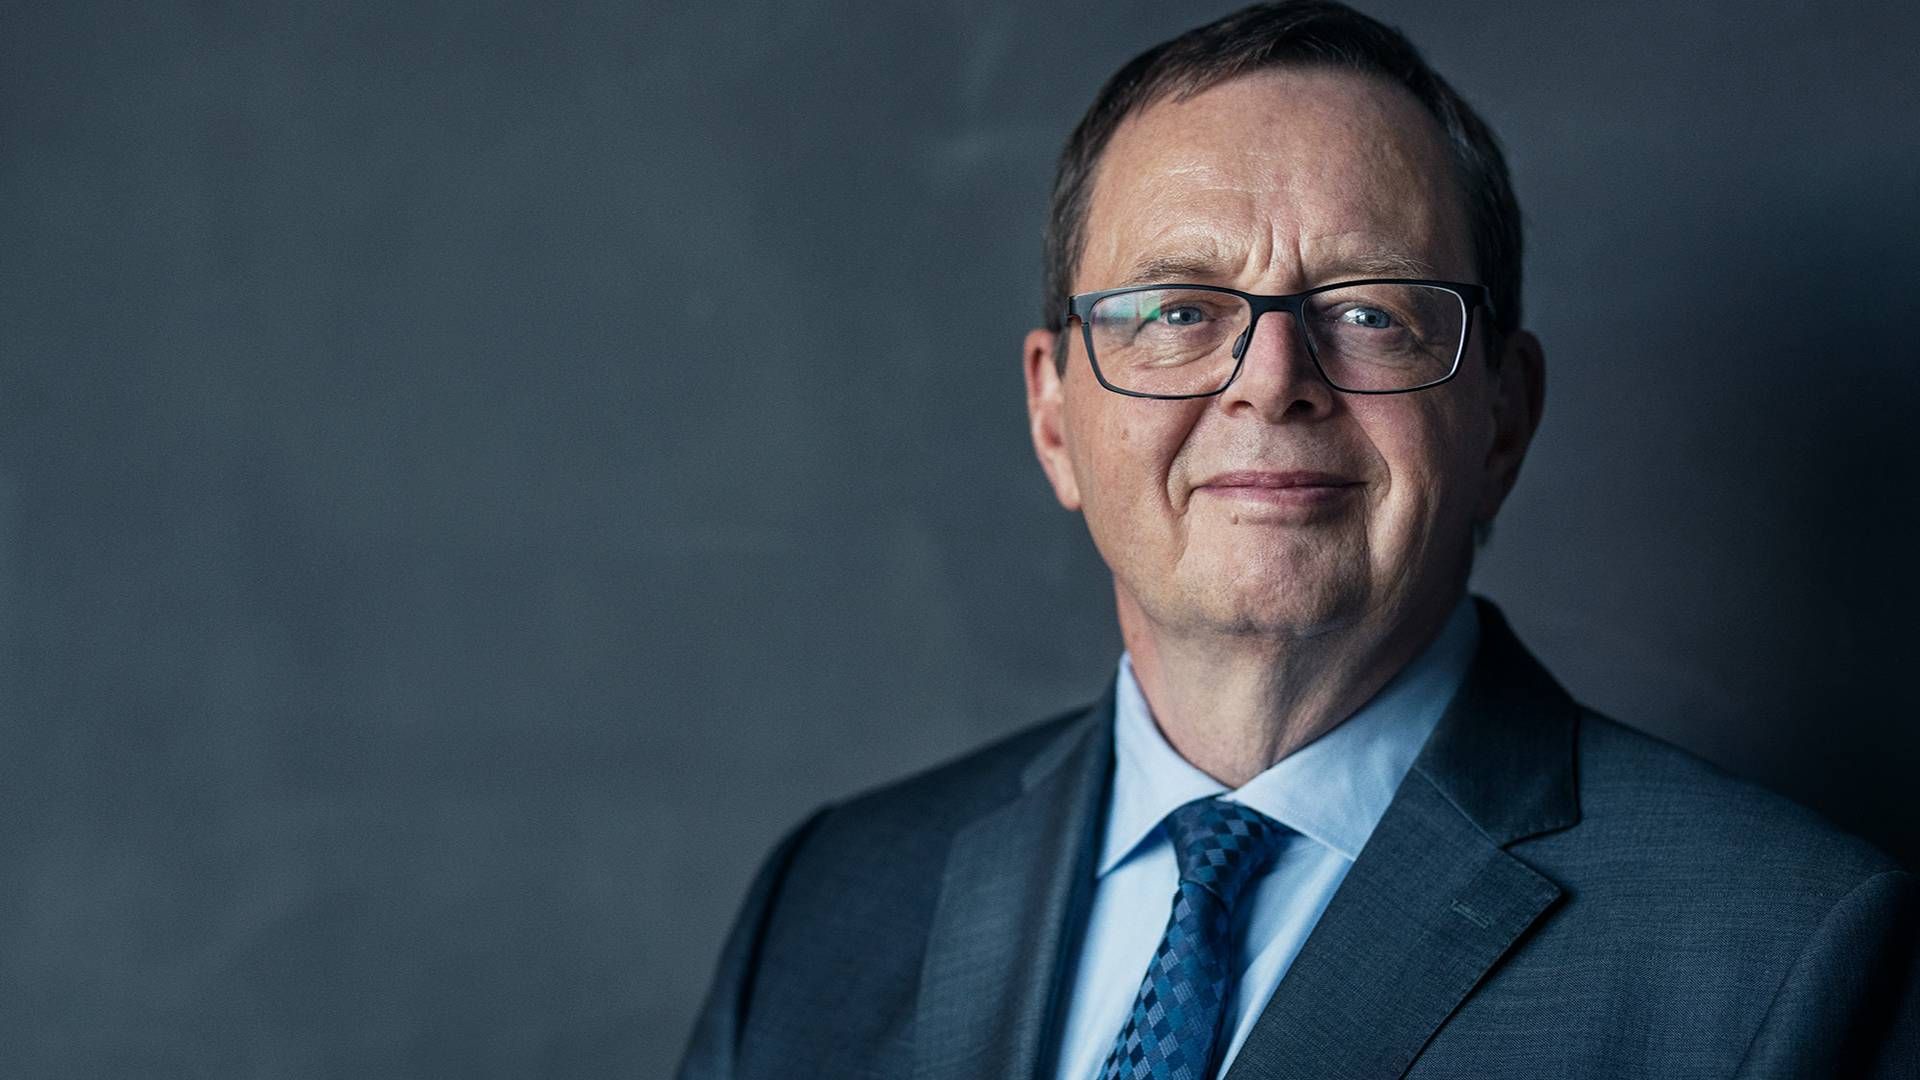 Ny direktør for Nationalbanken, Christian Kettel Thomsen, overtager forgængerens bekymring for boligmarkedet. | Foto: Pr